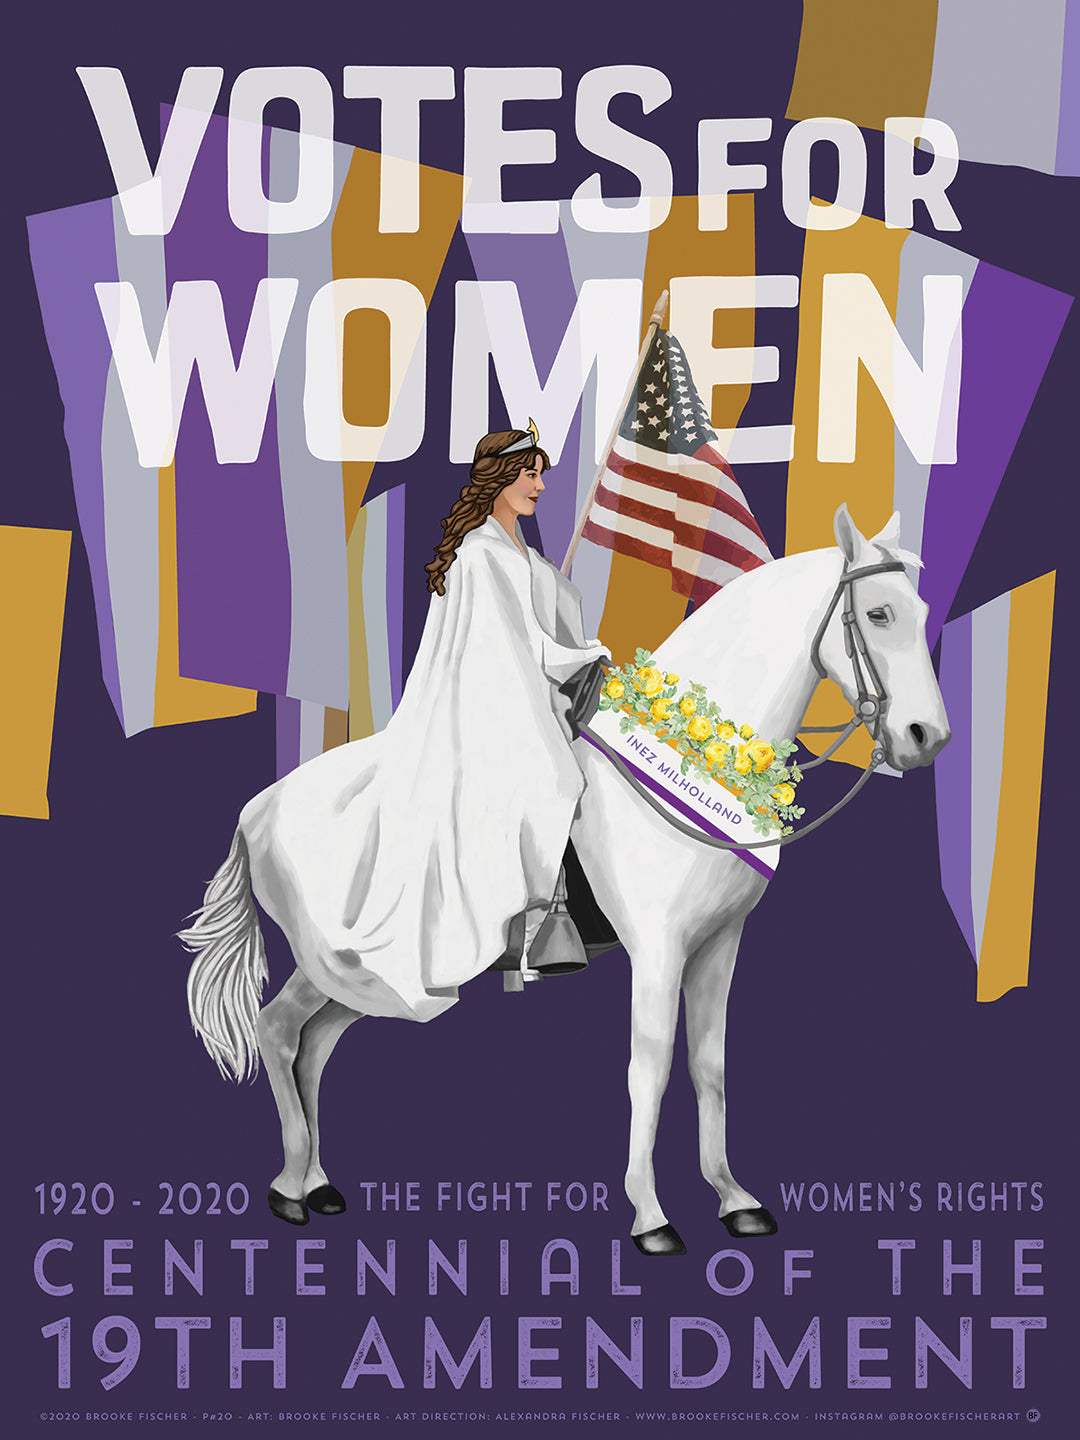 19th Amendment Poster by Brooke Fischer Haight Street Art Center